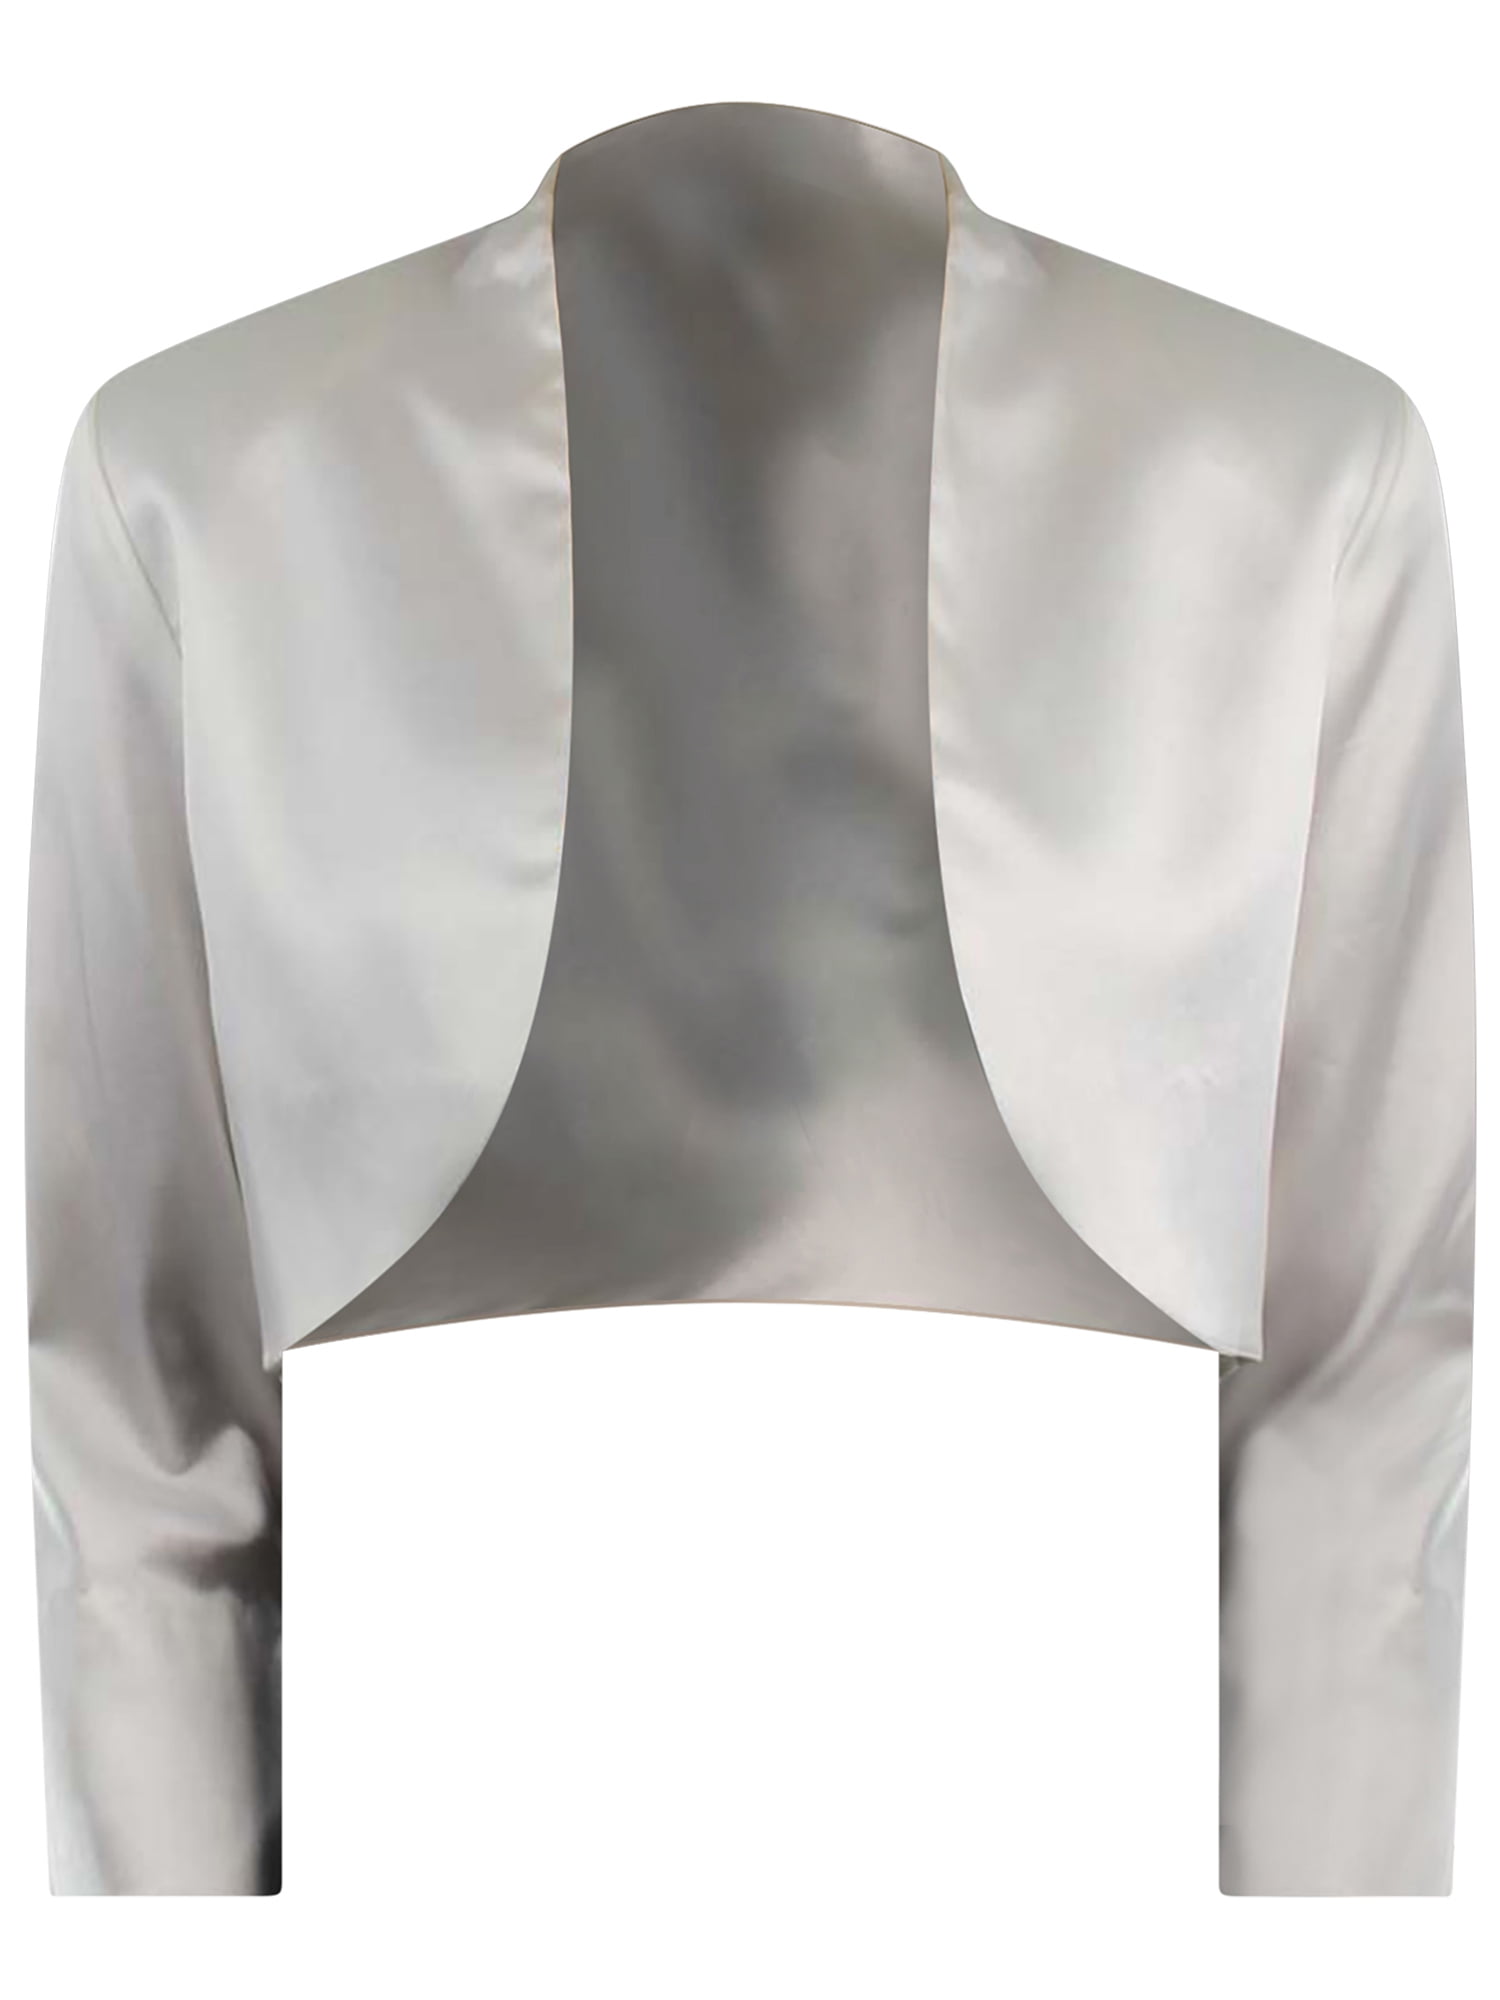 Women Wedding Satin Bolero Shrug Jacket Stole 3/4 Length Sleeve UK Size S/M/L/XL 